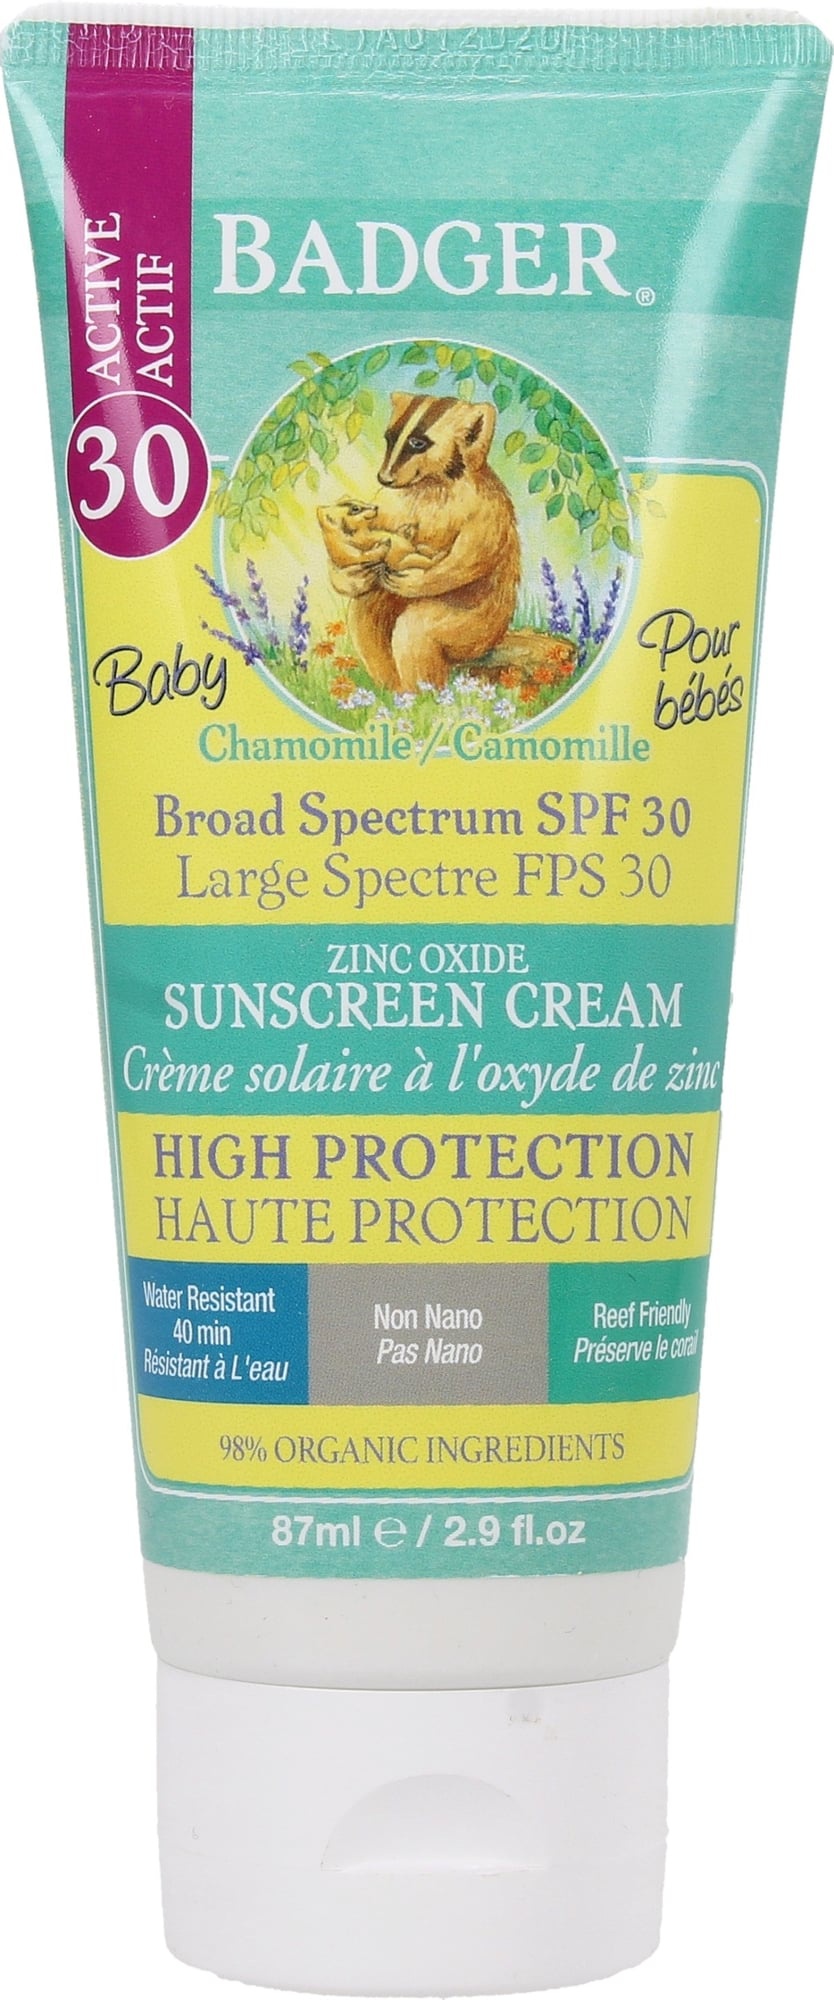 Badger Balm Chamomile & Calendula Baby Zinc Oxide Sunscreen Cream